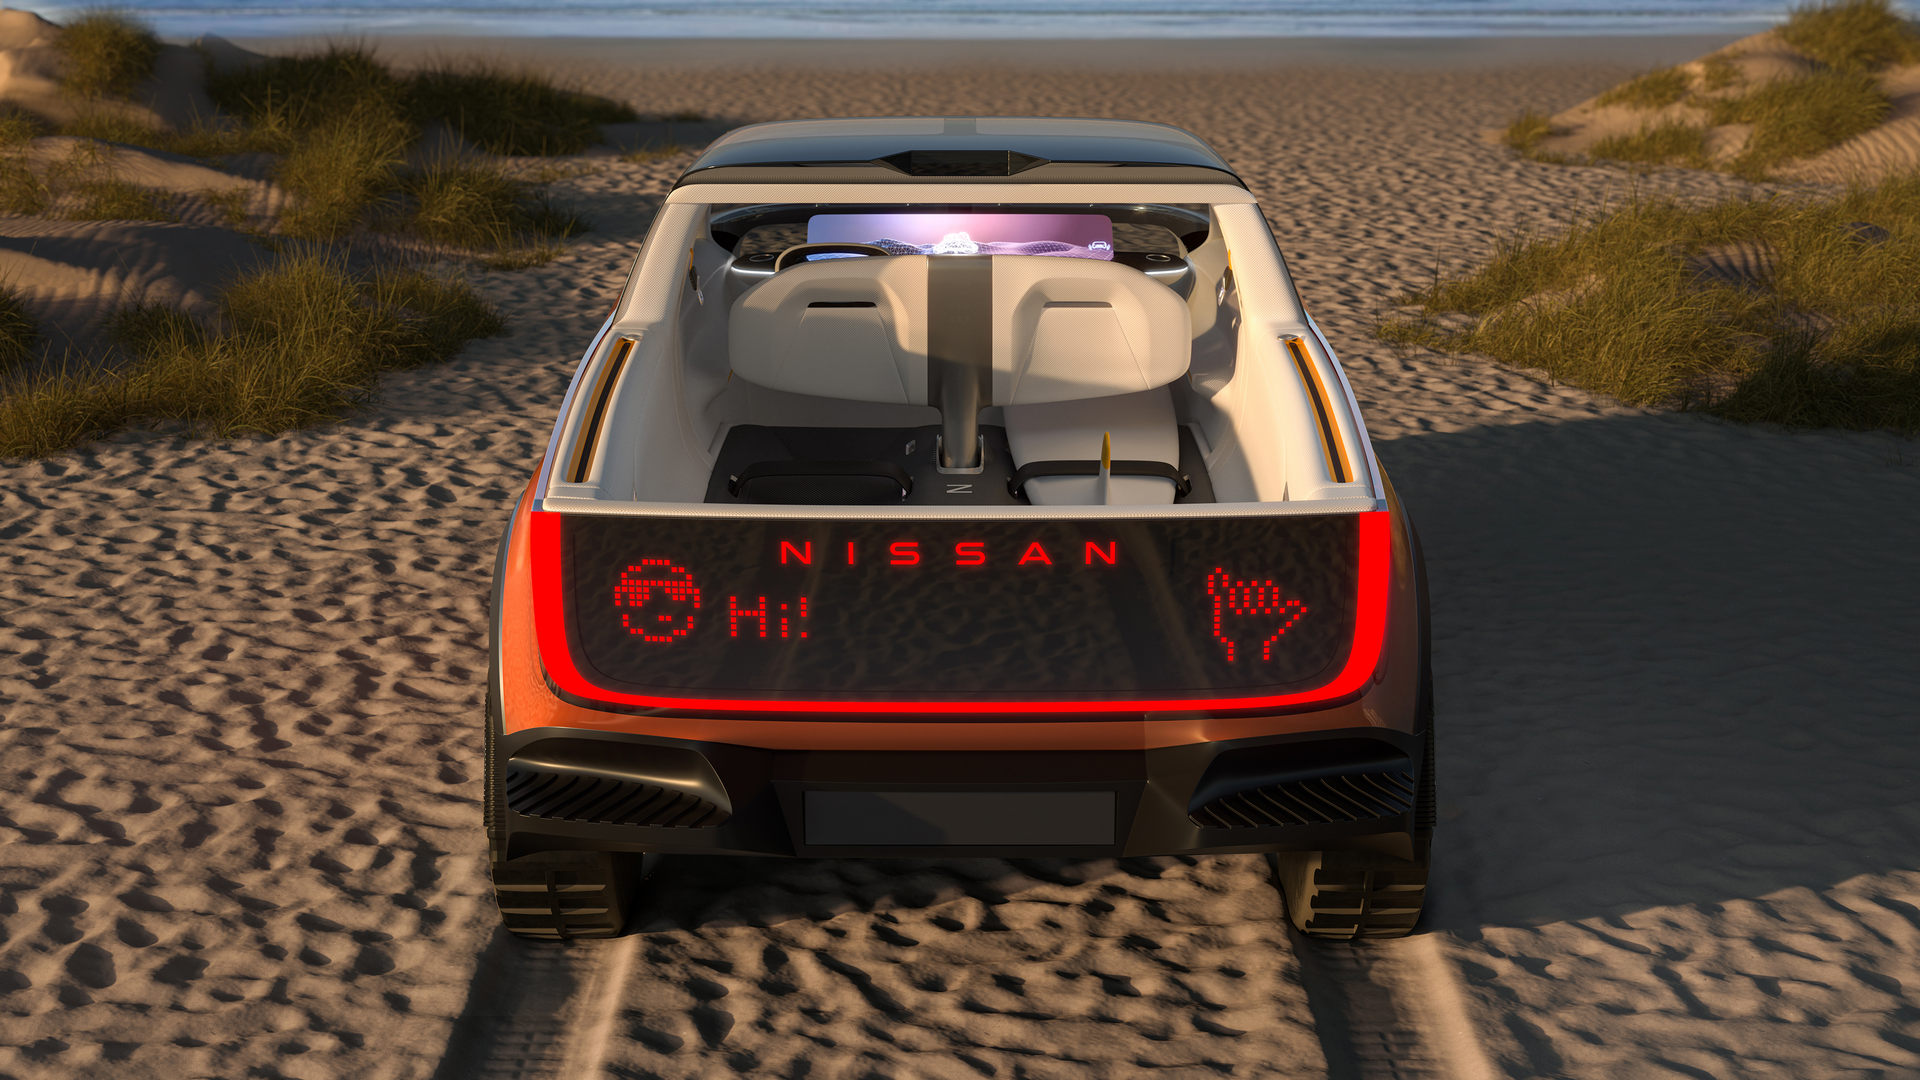 Nissan konsept modeller